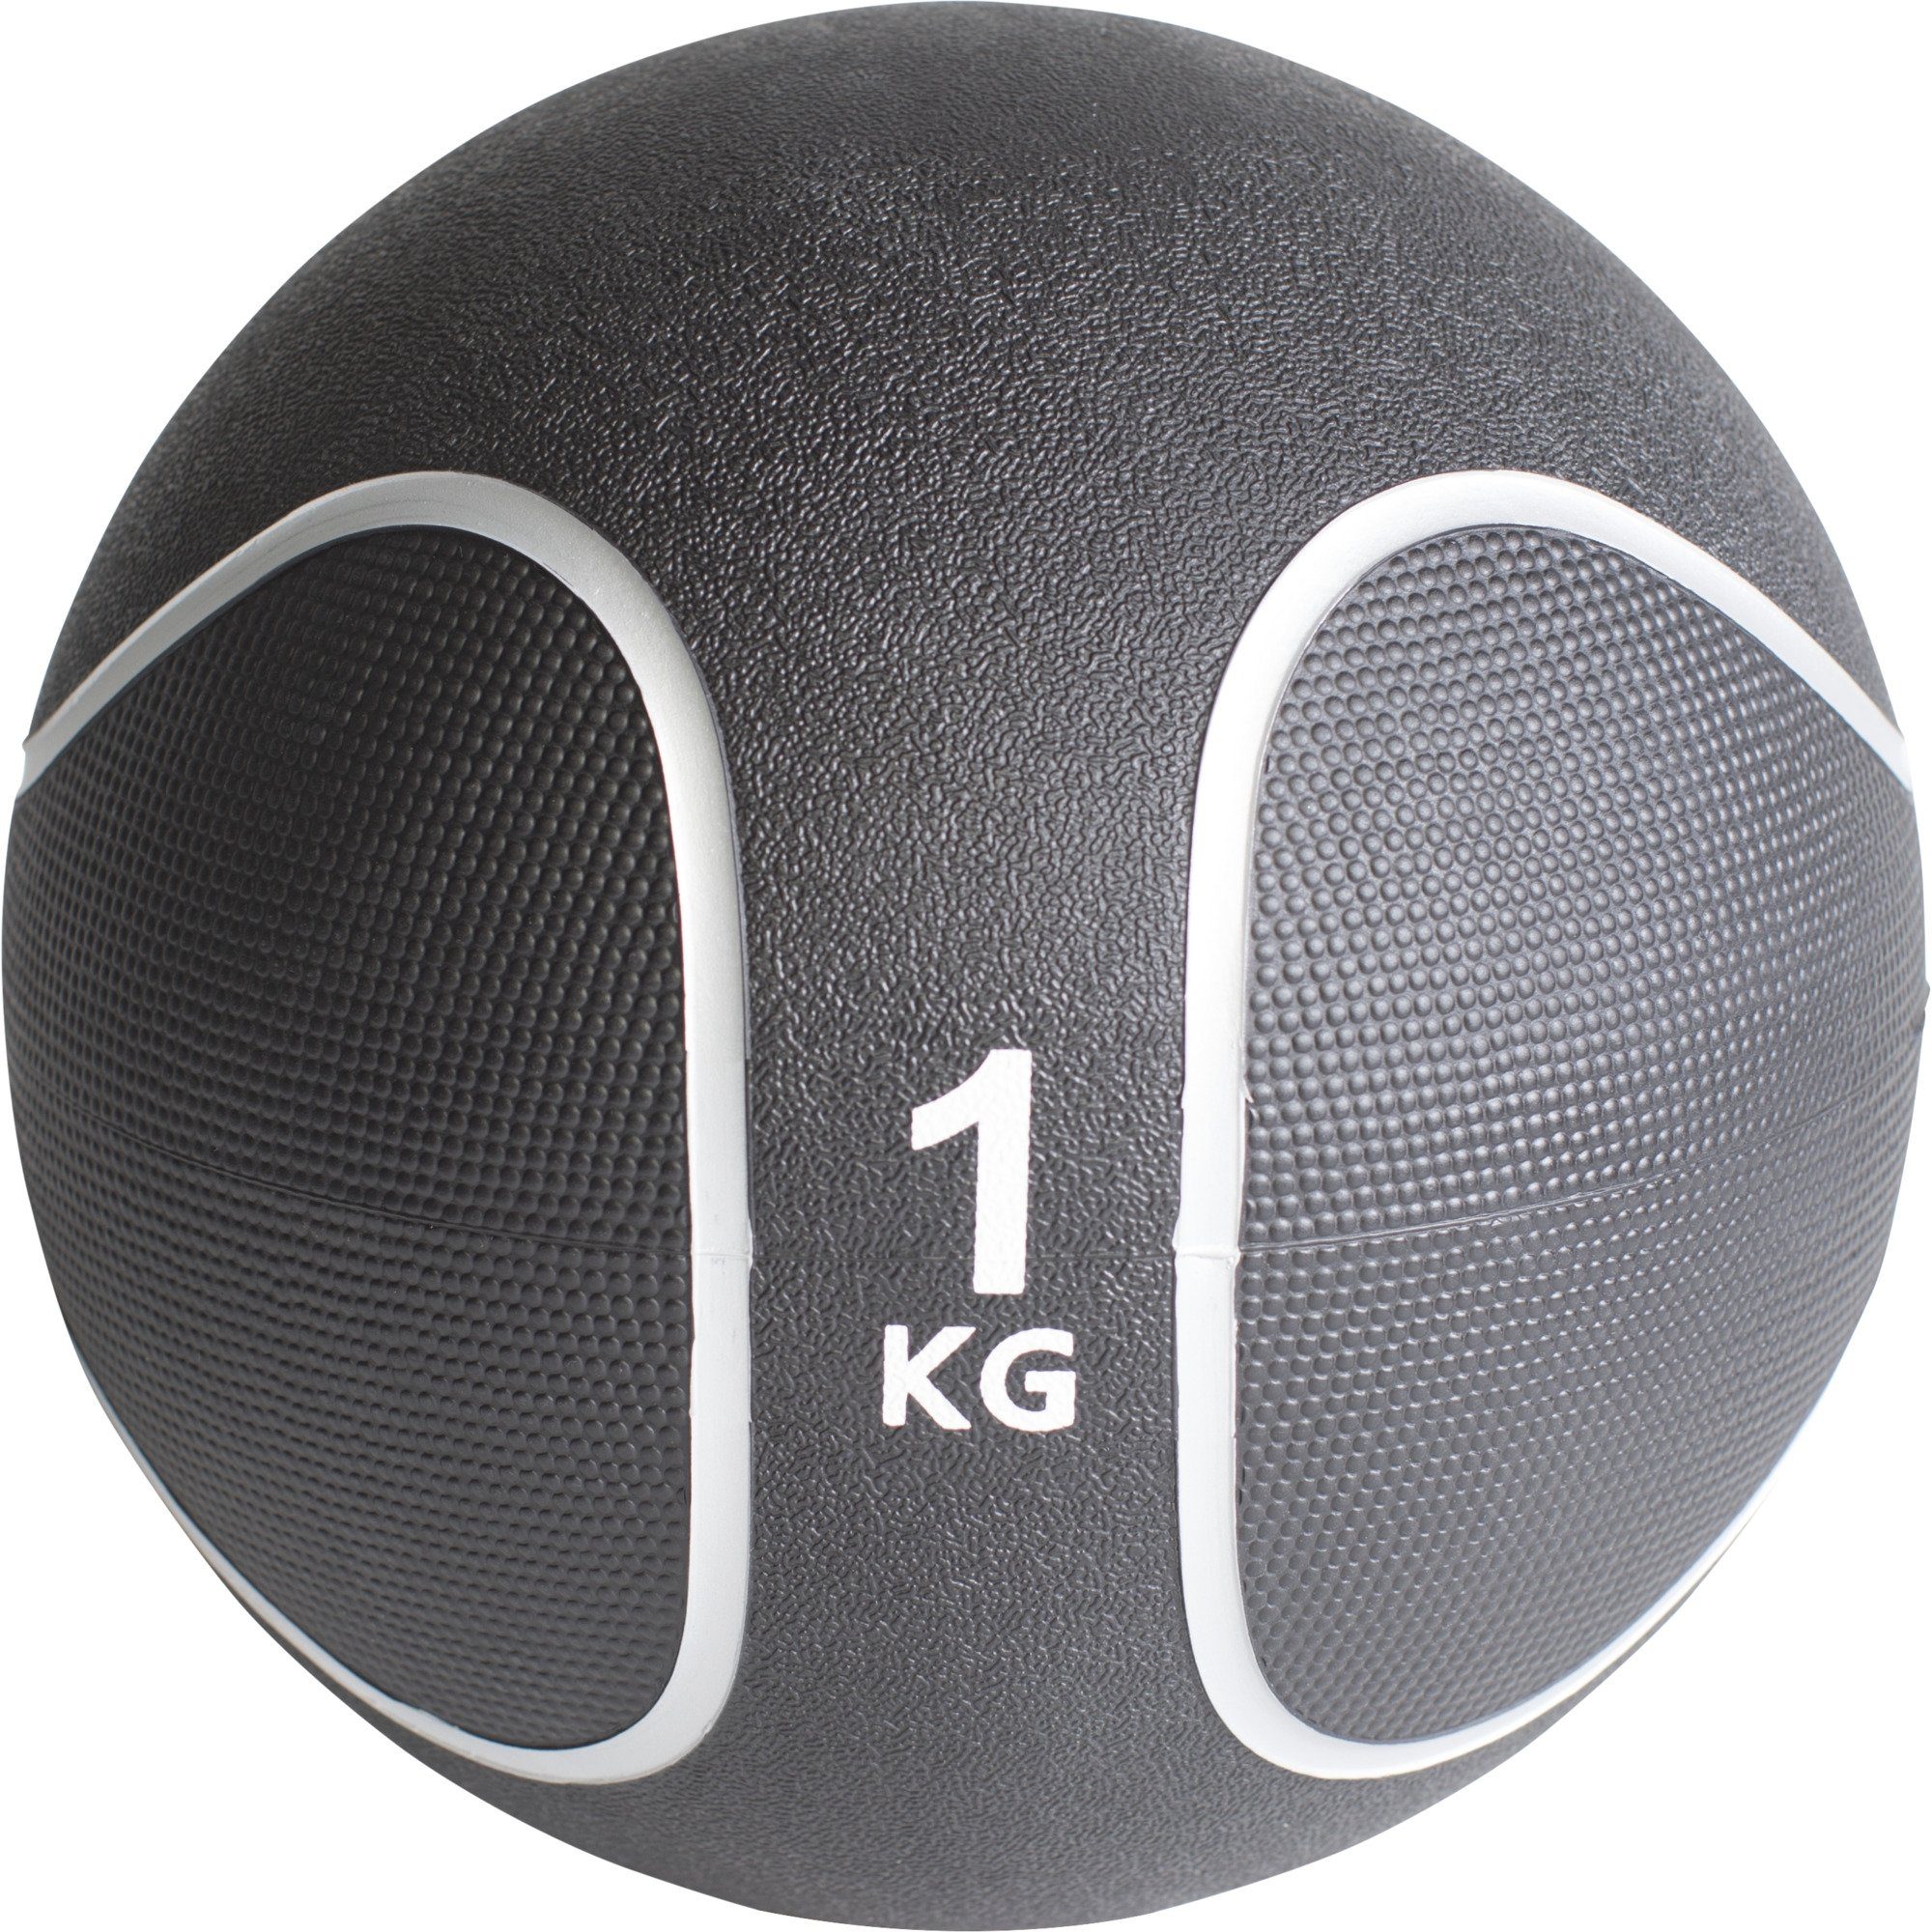 GORILLA SPORTS Medizinball Einzeln / Set, Ø 23 oder 29 cm, rutschfest, aus Gummi, Fitnessball 1 KG